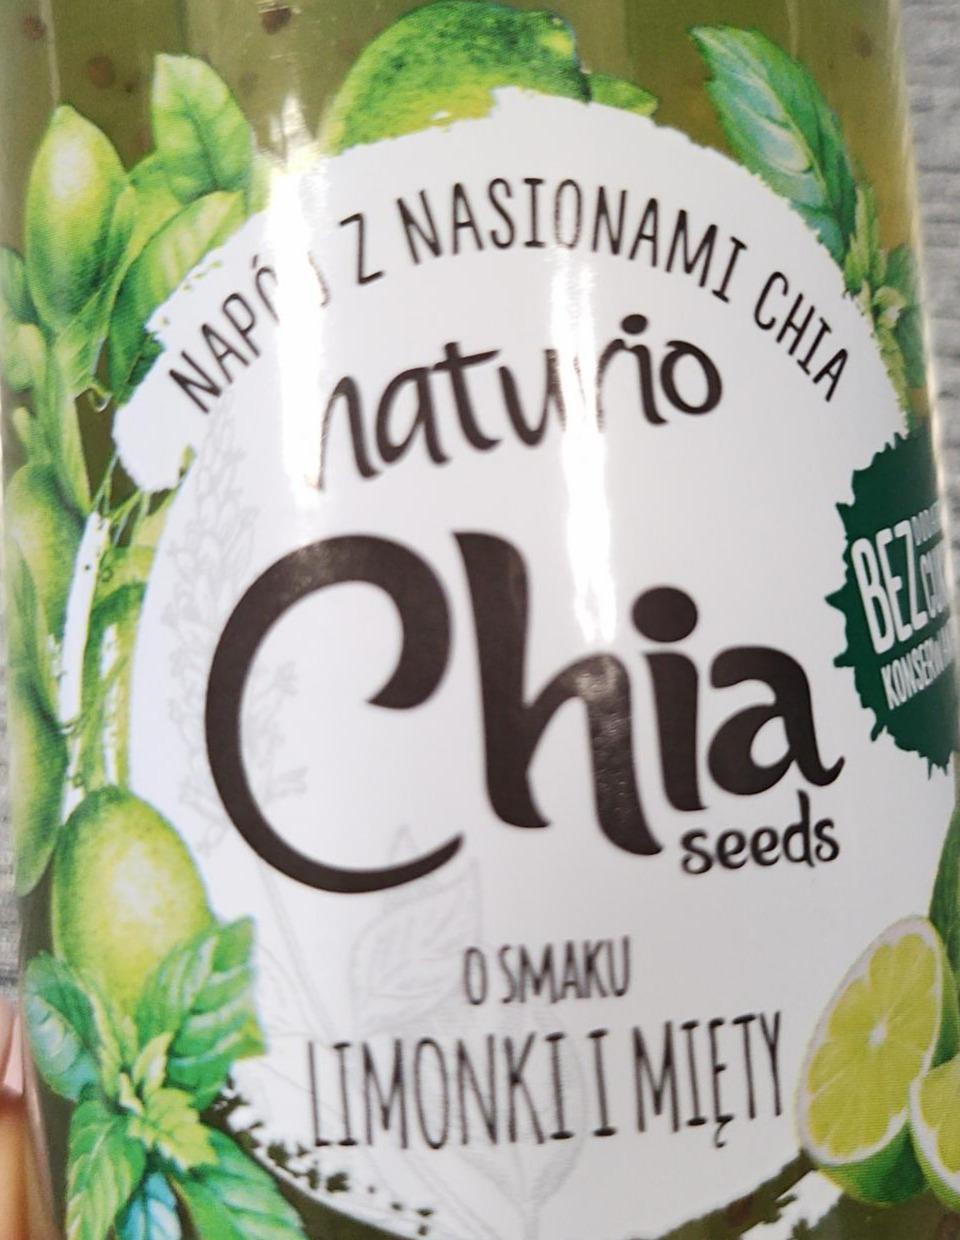 Fotografie - Napój z nasionami Chia seeds o smaku Limonki i Mięty Naturio